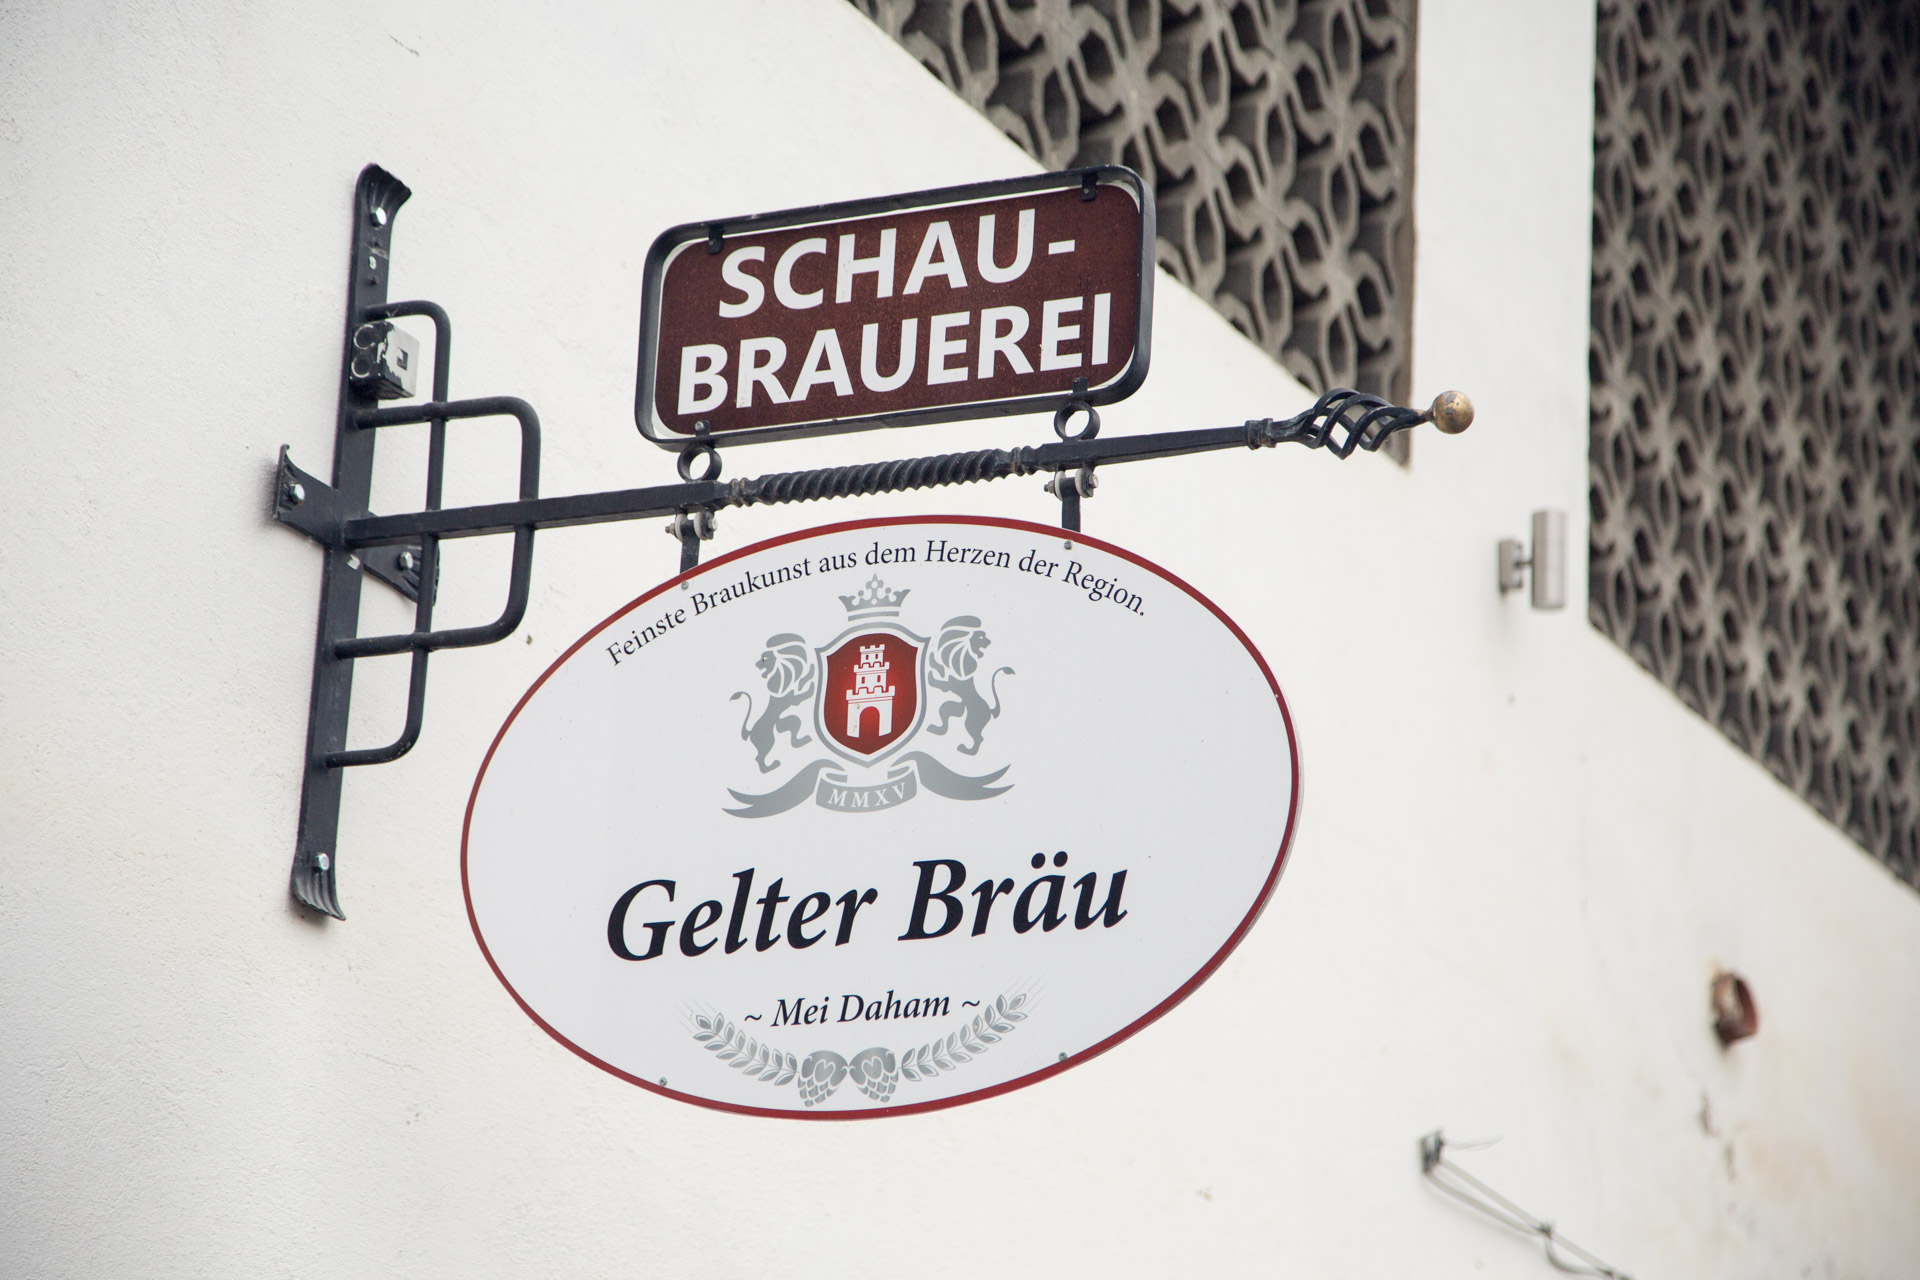 Gelter Bräu